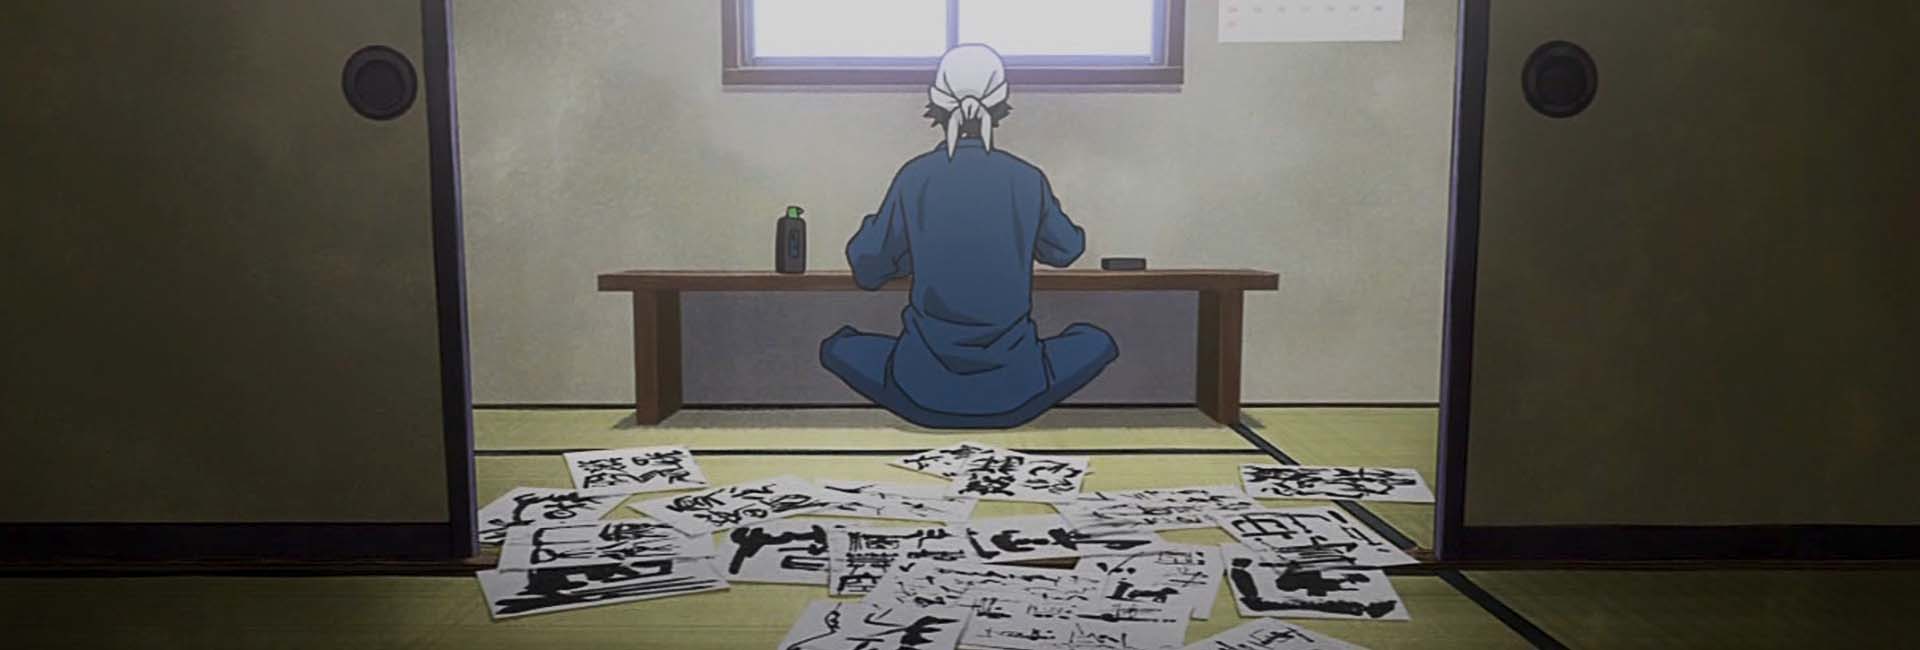 Nomes de animes - Homem escrevendo kanji, textos tradicionais japoneses